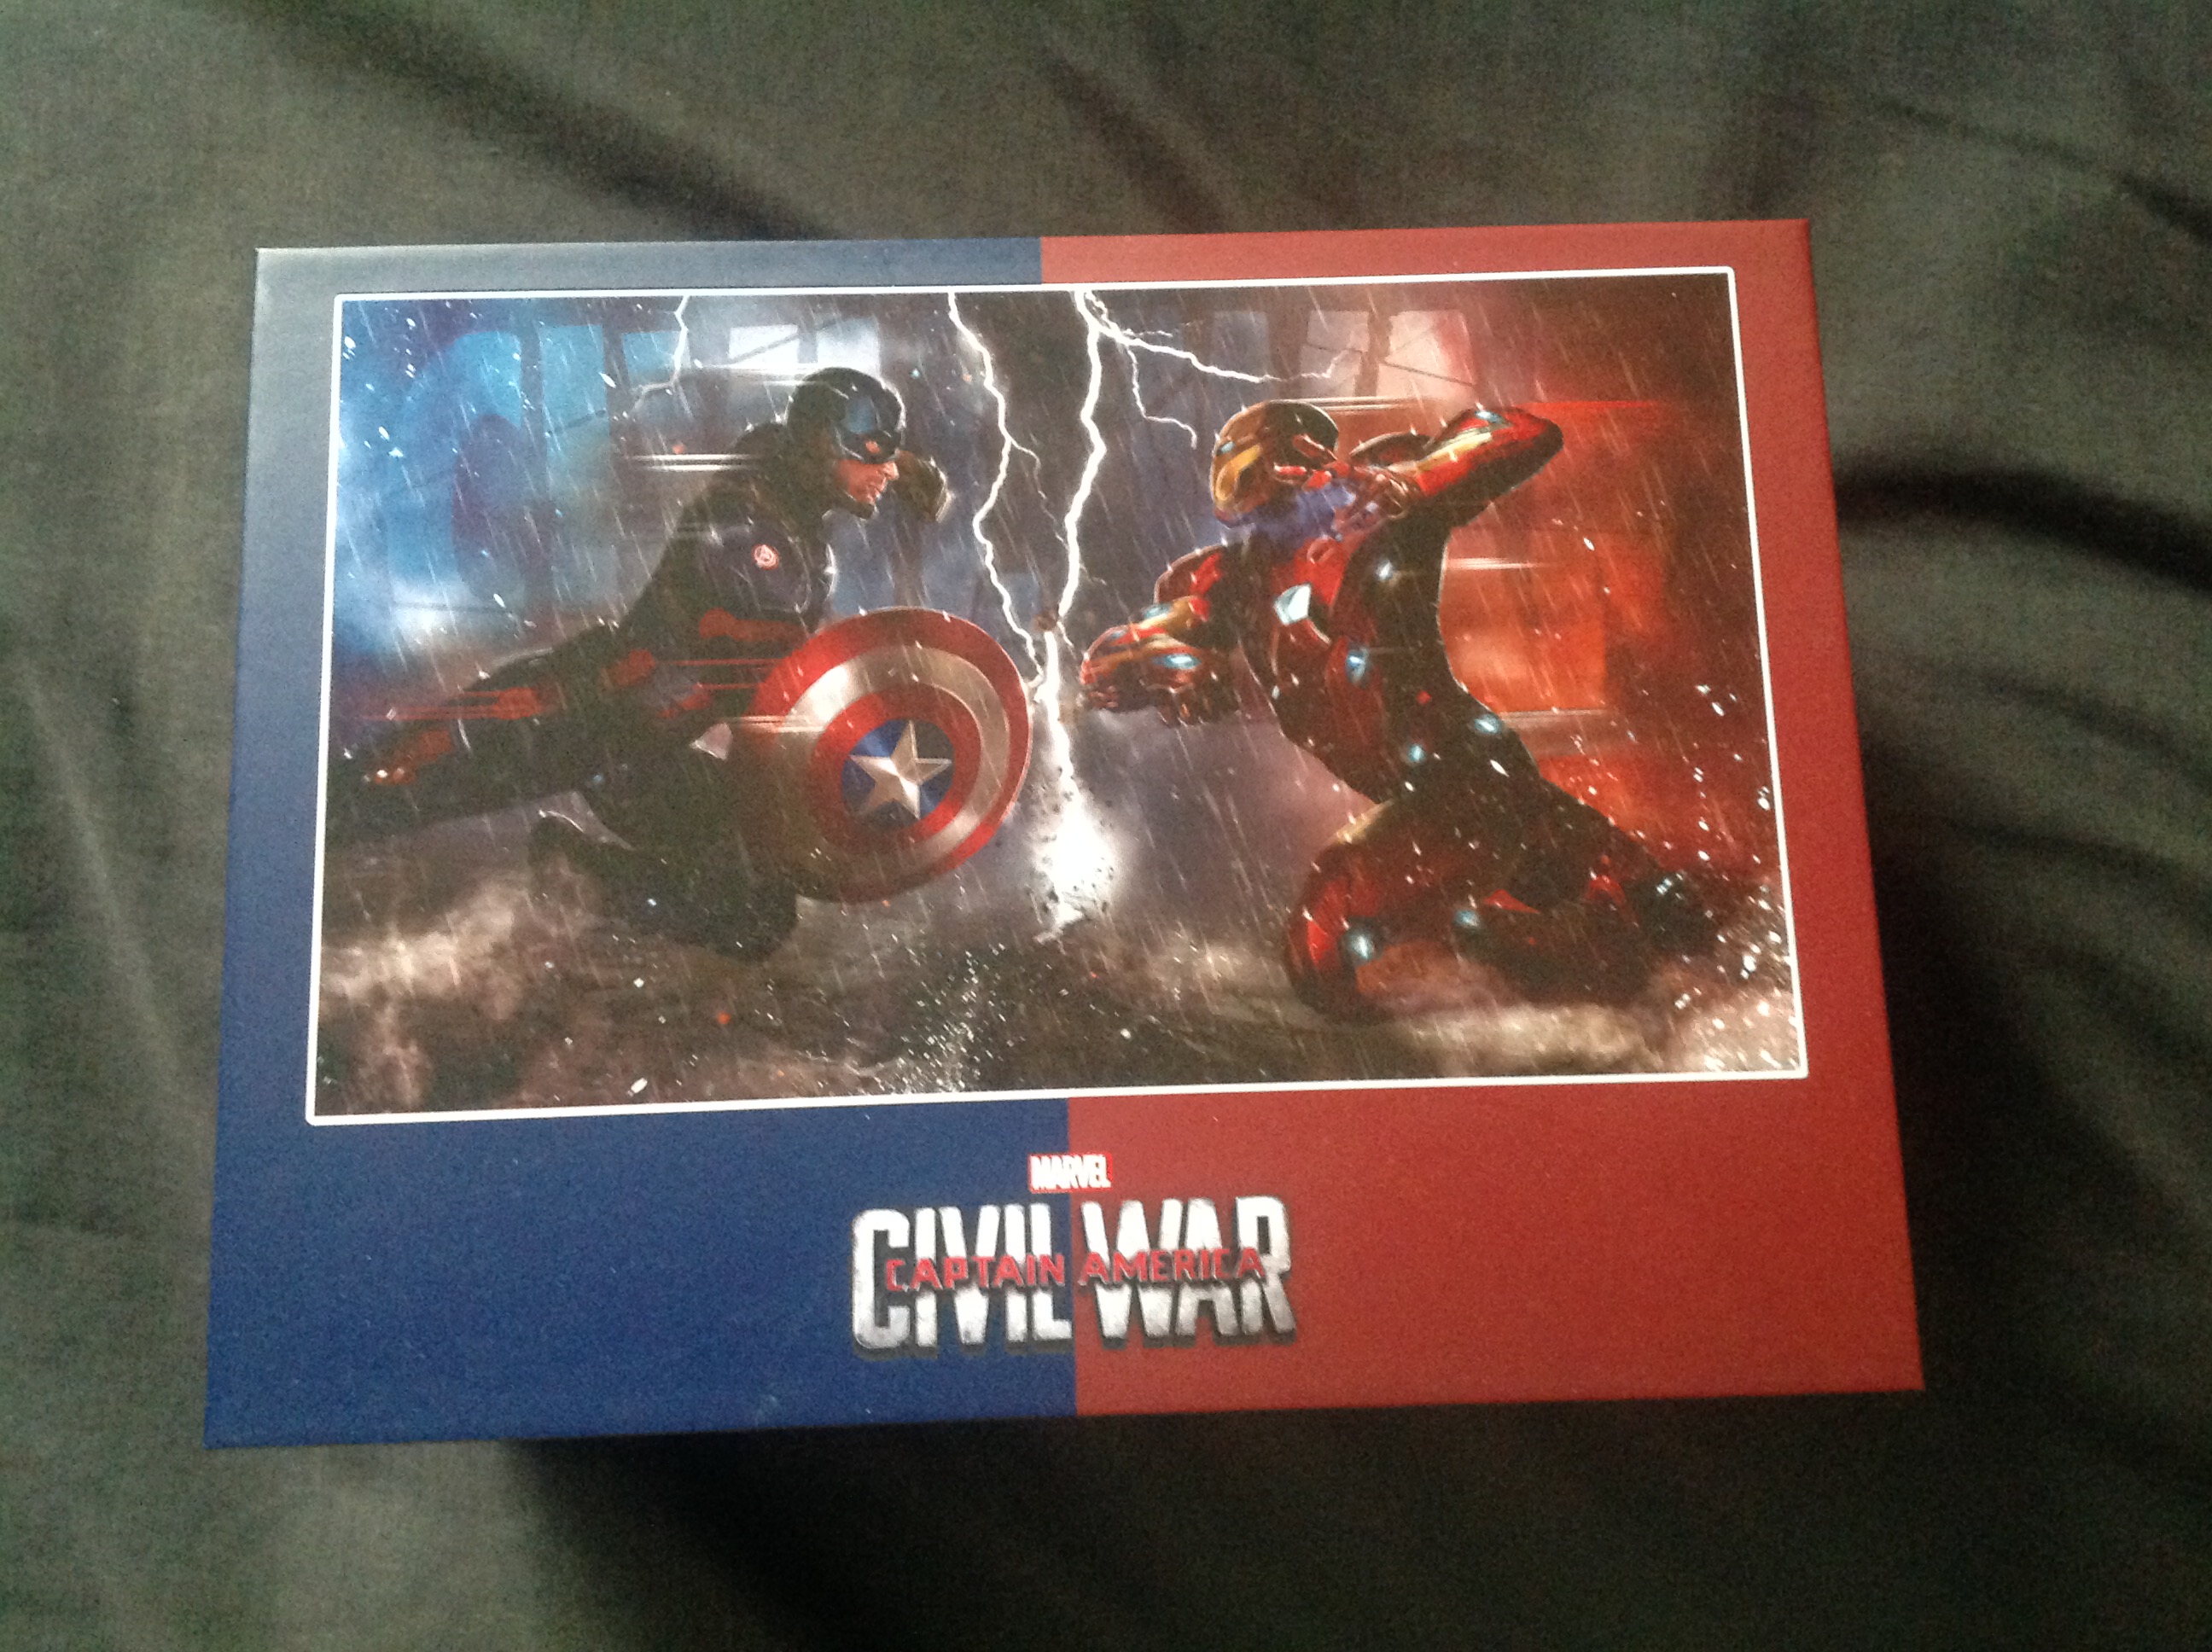 Civil war box